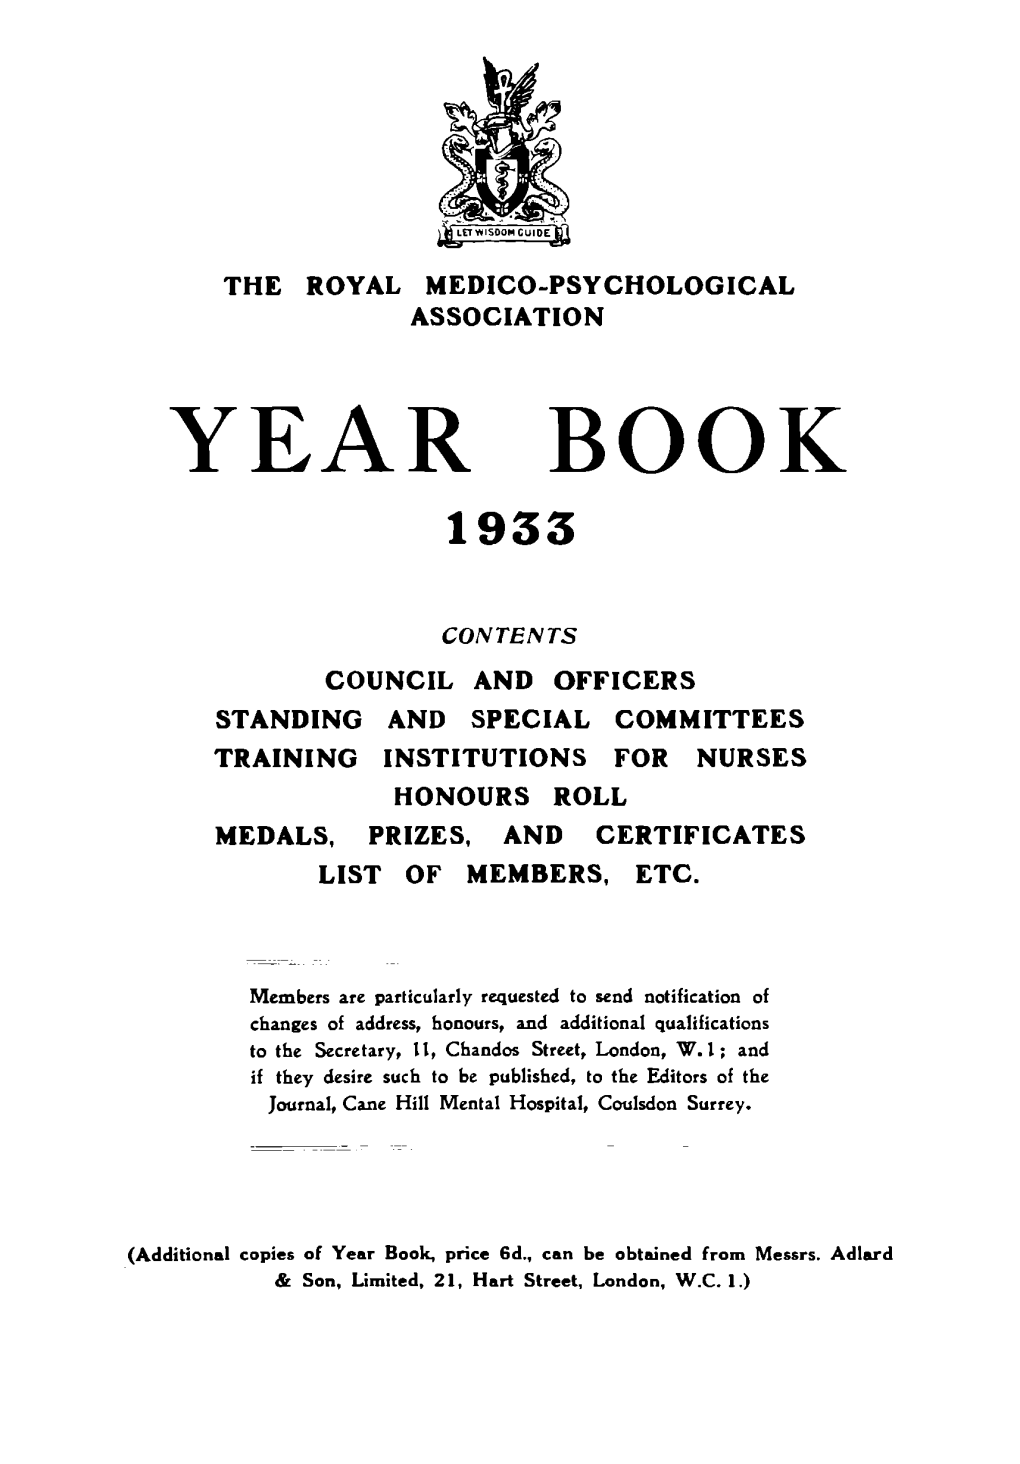 Year Book 1933